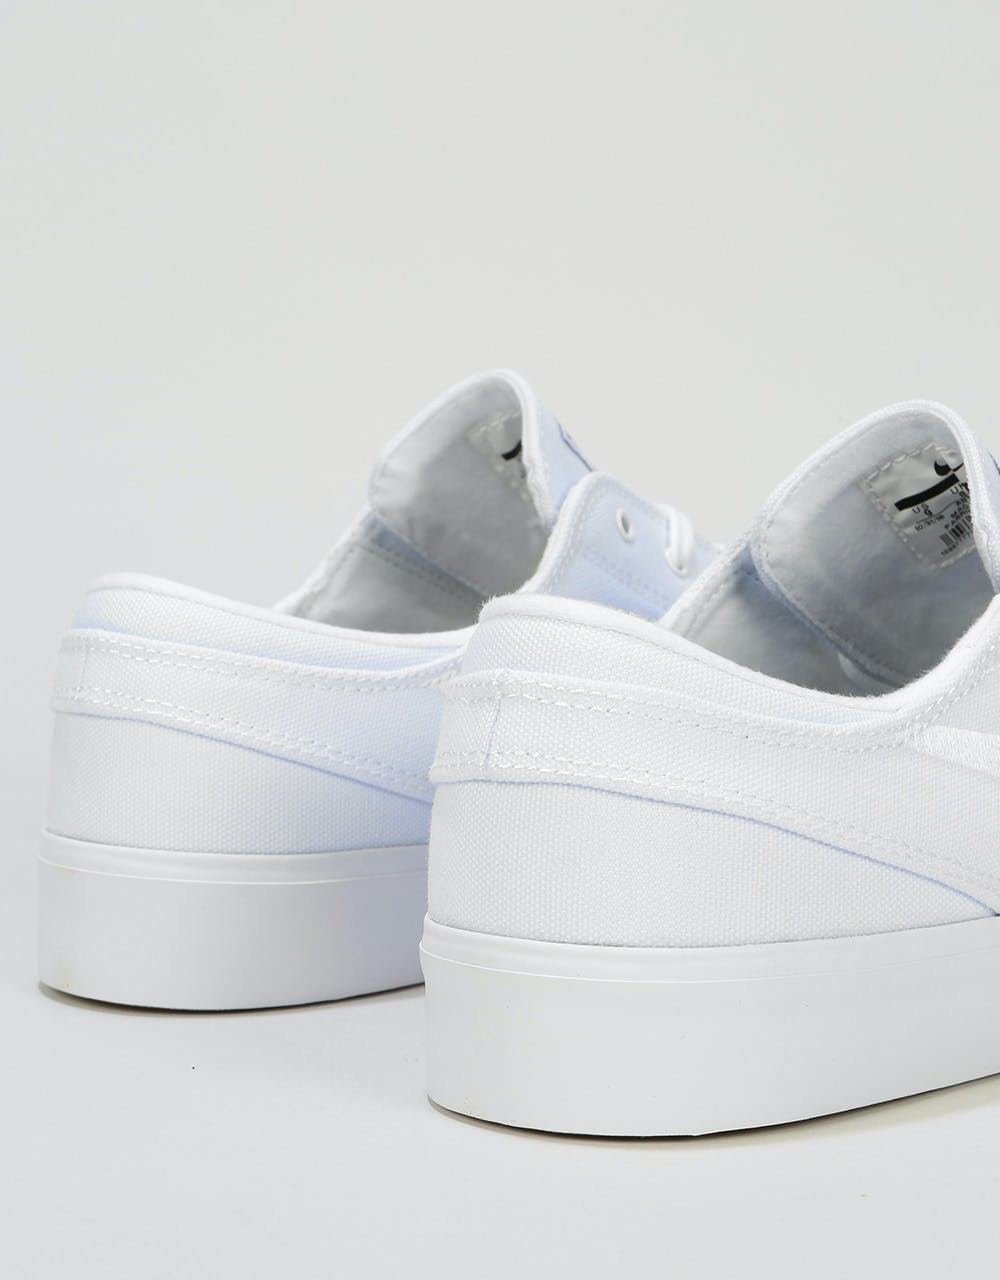 Nike SB Zoom Janoski RM Canvas Skate Shoes - White/White-Gum